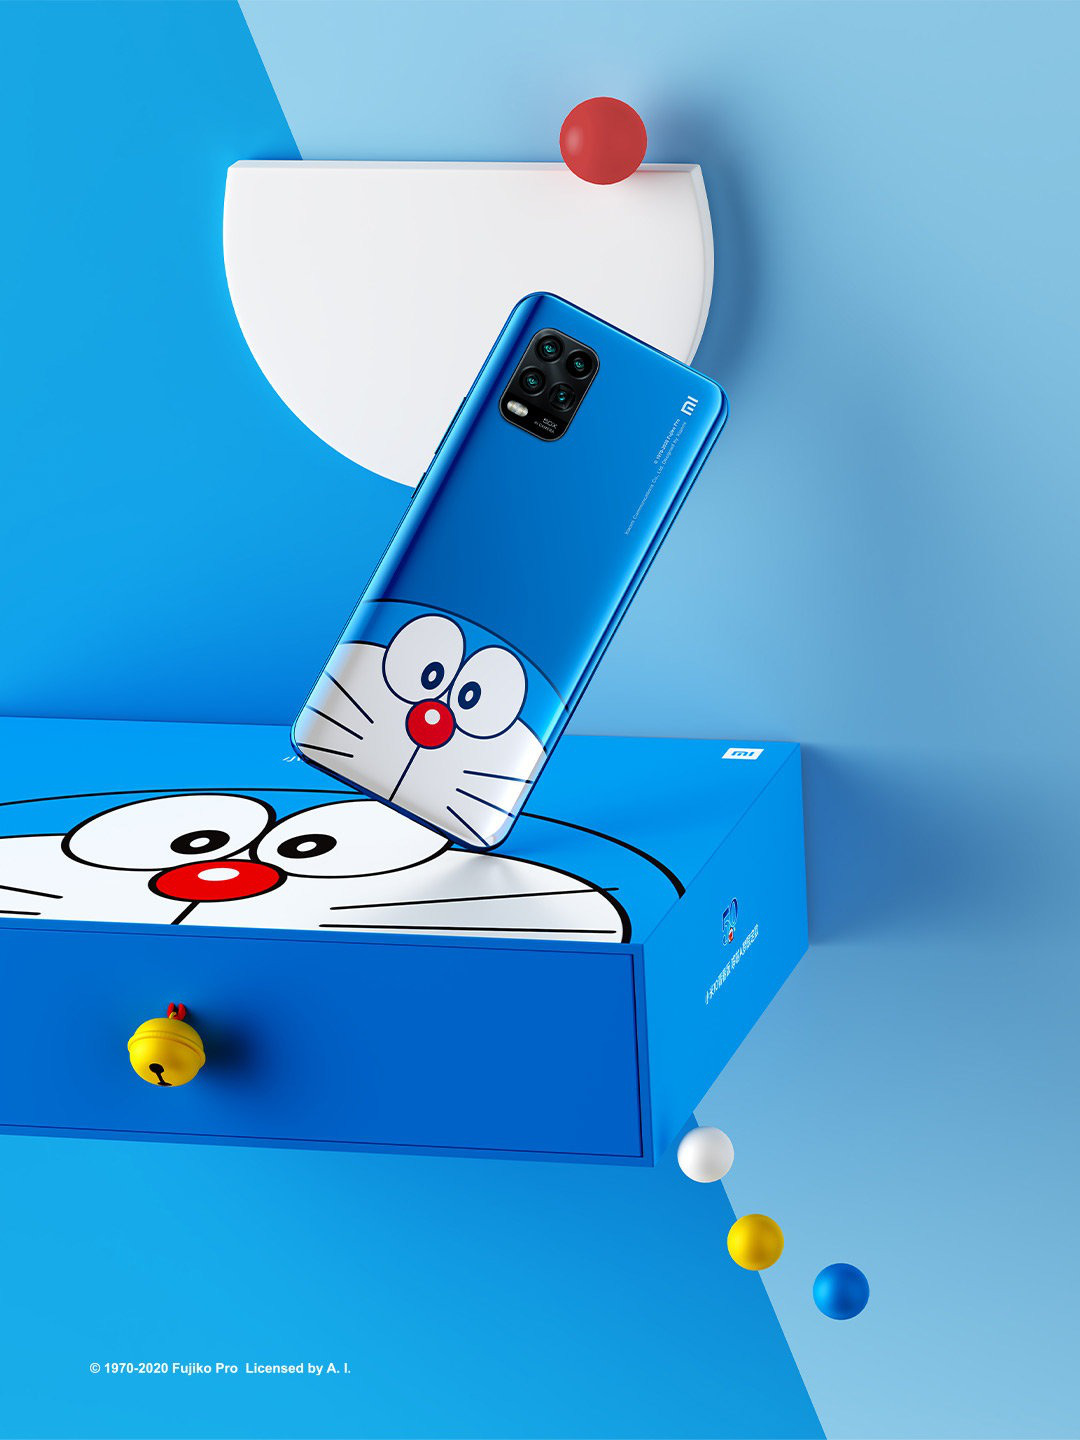 Xiaomi điện thoại Doraemon: Màn hình đáng yêu với hình ảnh Doraemon ngộ nghĩnh sẽ khiến bạn không thể rời mắt khỏi những tính năng tuyệt vời của chiếc điện thoại Xiaomi này. Hãy xem ngay hình ảnh liên quan để cảm nhận điều đó nhé!